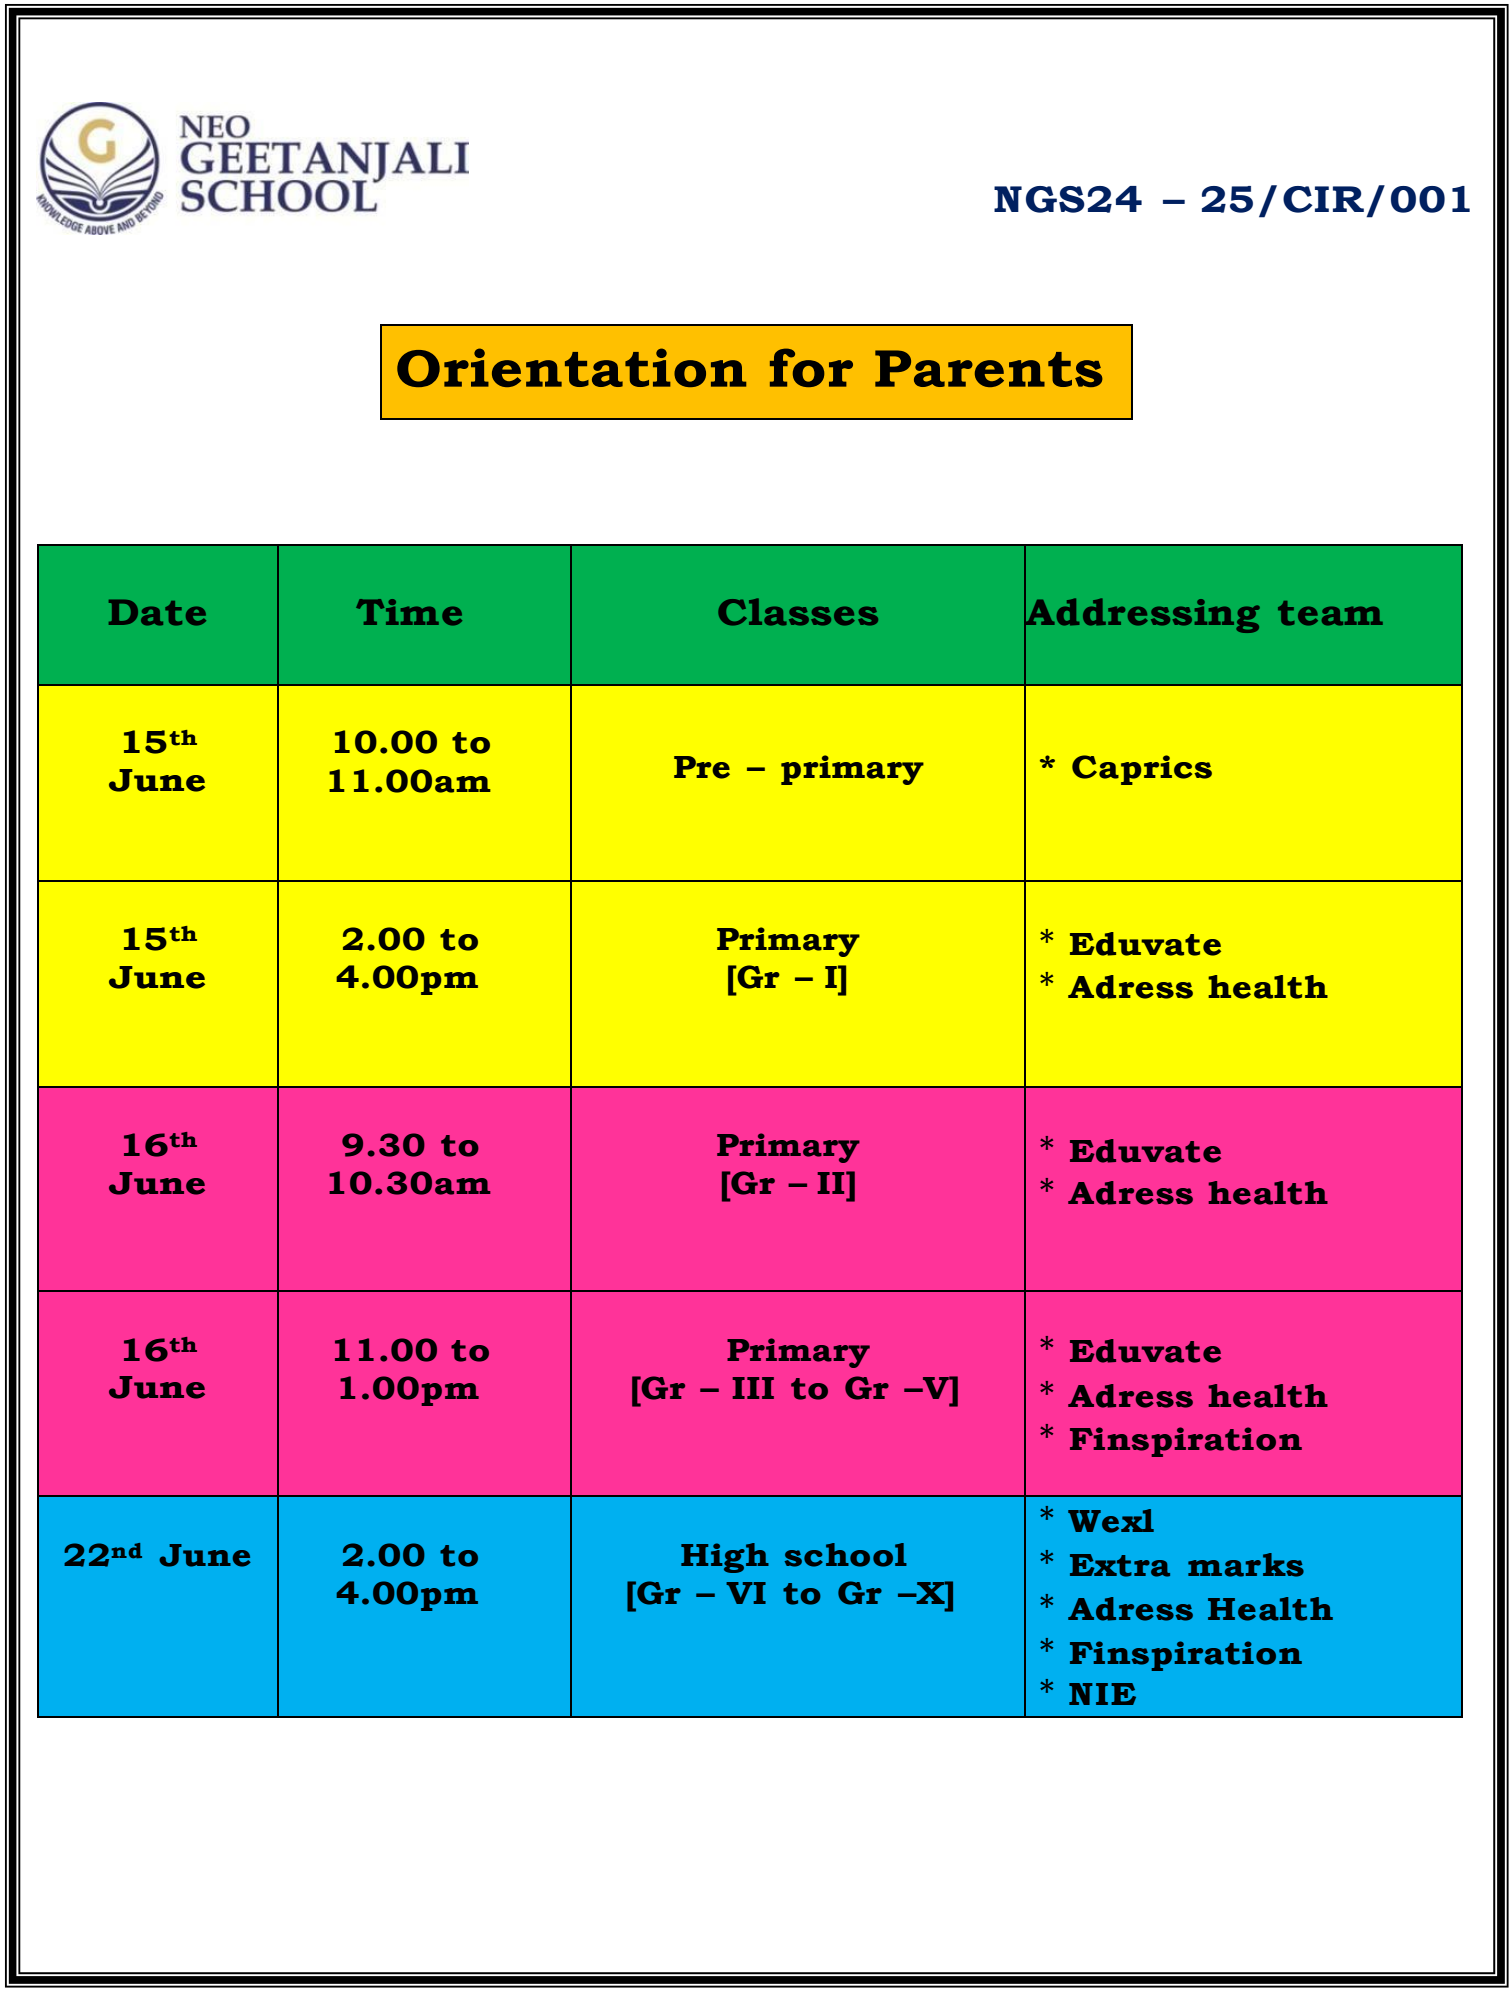 Orientation for Parents